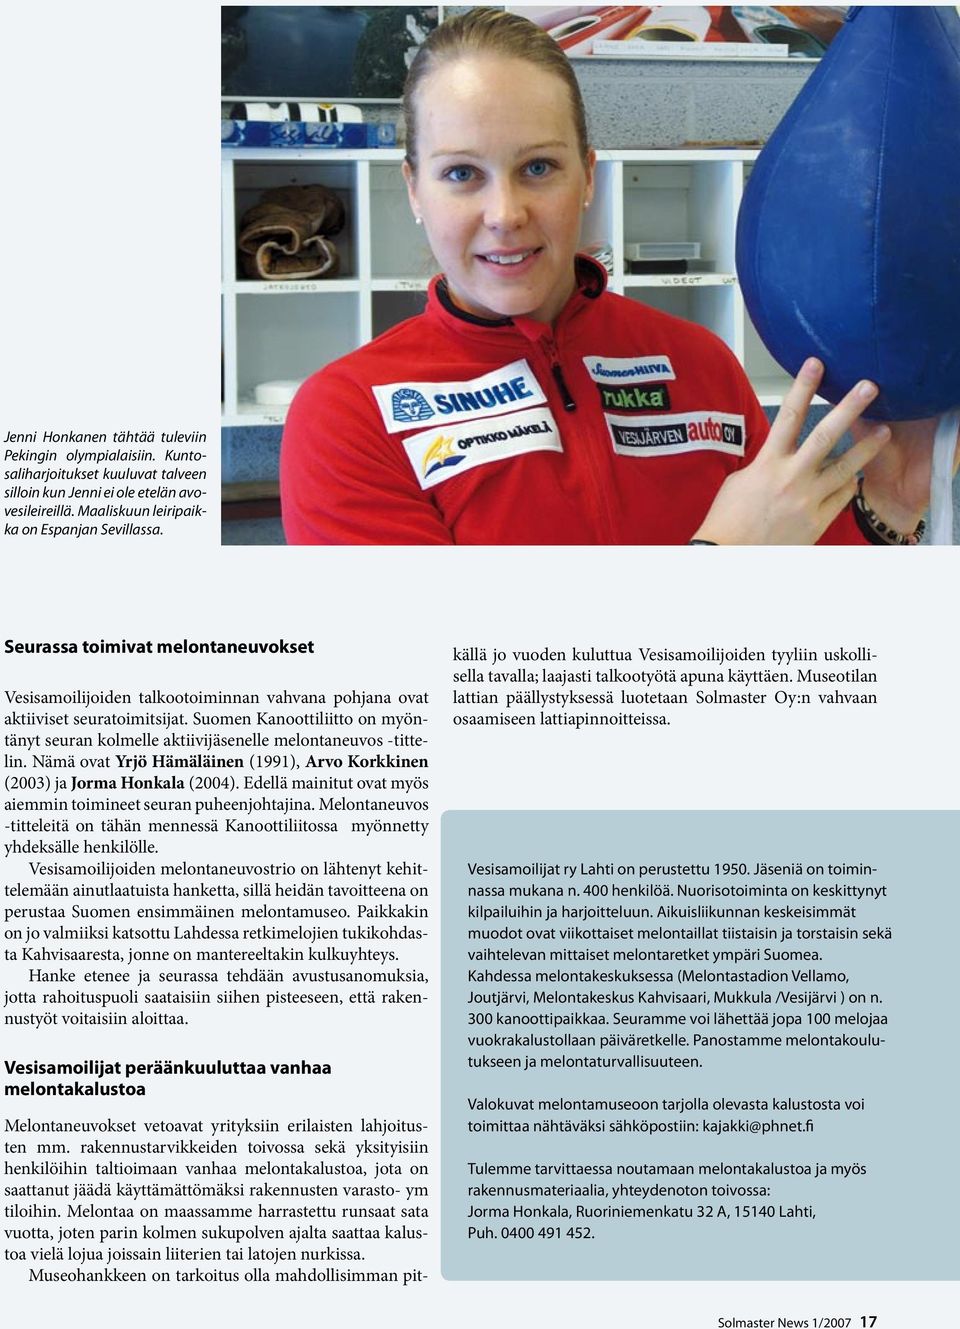 Suomen Kanoottiliitto on myöntänyt seuran kolmelle aktiivijäsenelle melontaneuvos -tittelin. Nämä ovat Yrjö Hämäläinen (1991), Arvo Korkkinen (2003) ja Jorma Honkala (2004).